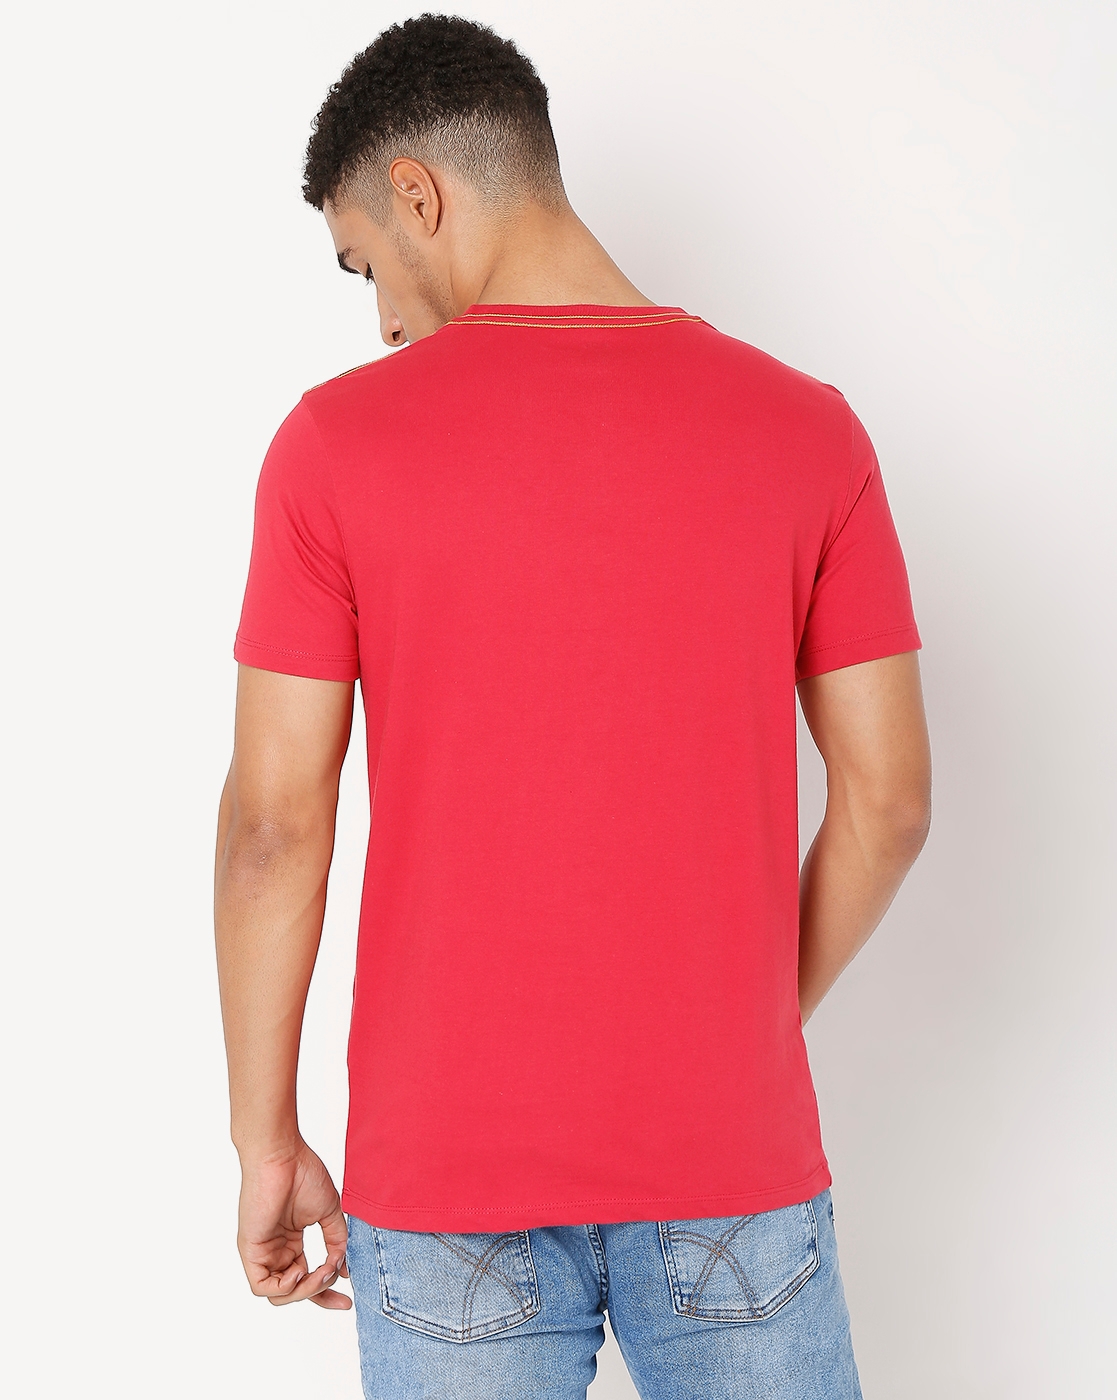 Men's SCUBA DOT IN Relaxed Fit T-shirt